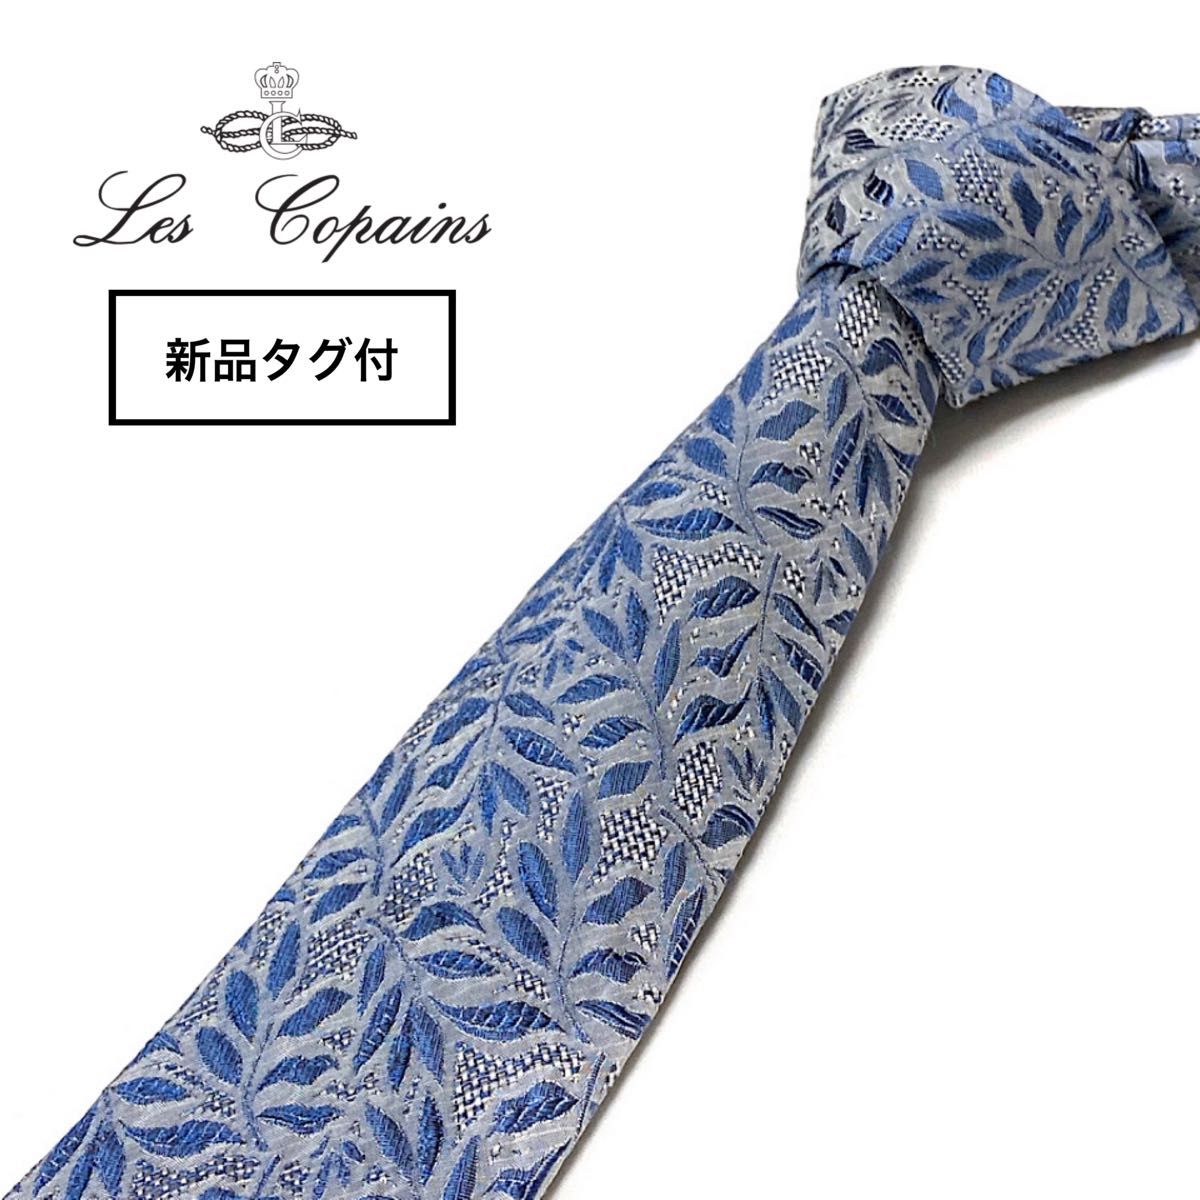 【新品タグ付】イタリアファクトリーブランド Les copains レコパン ネクタイ イタリア製 ボタニカル柄 ライトブルー